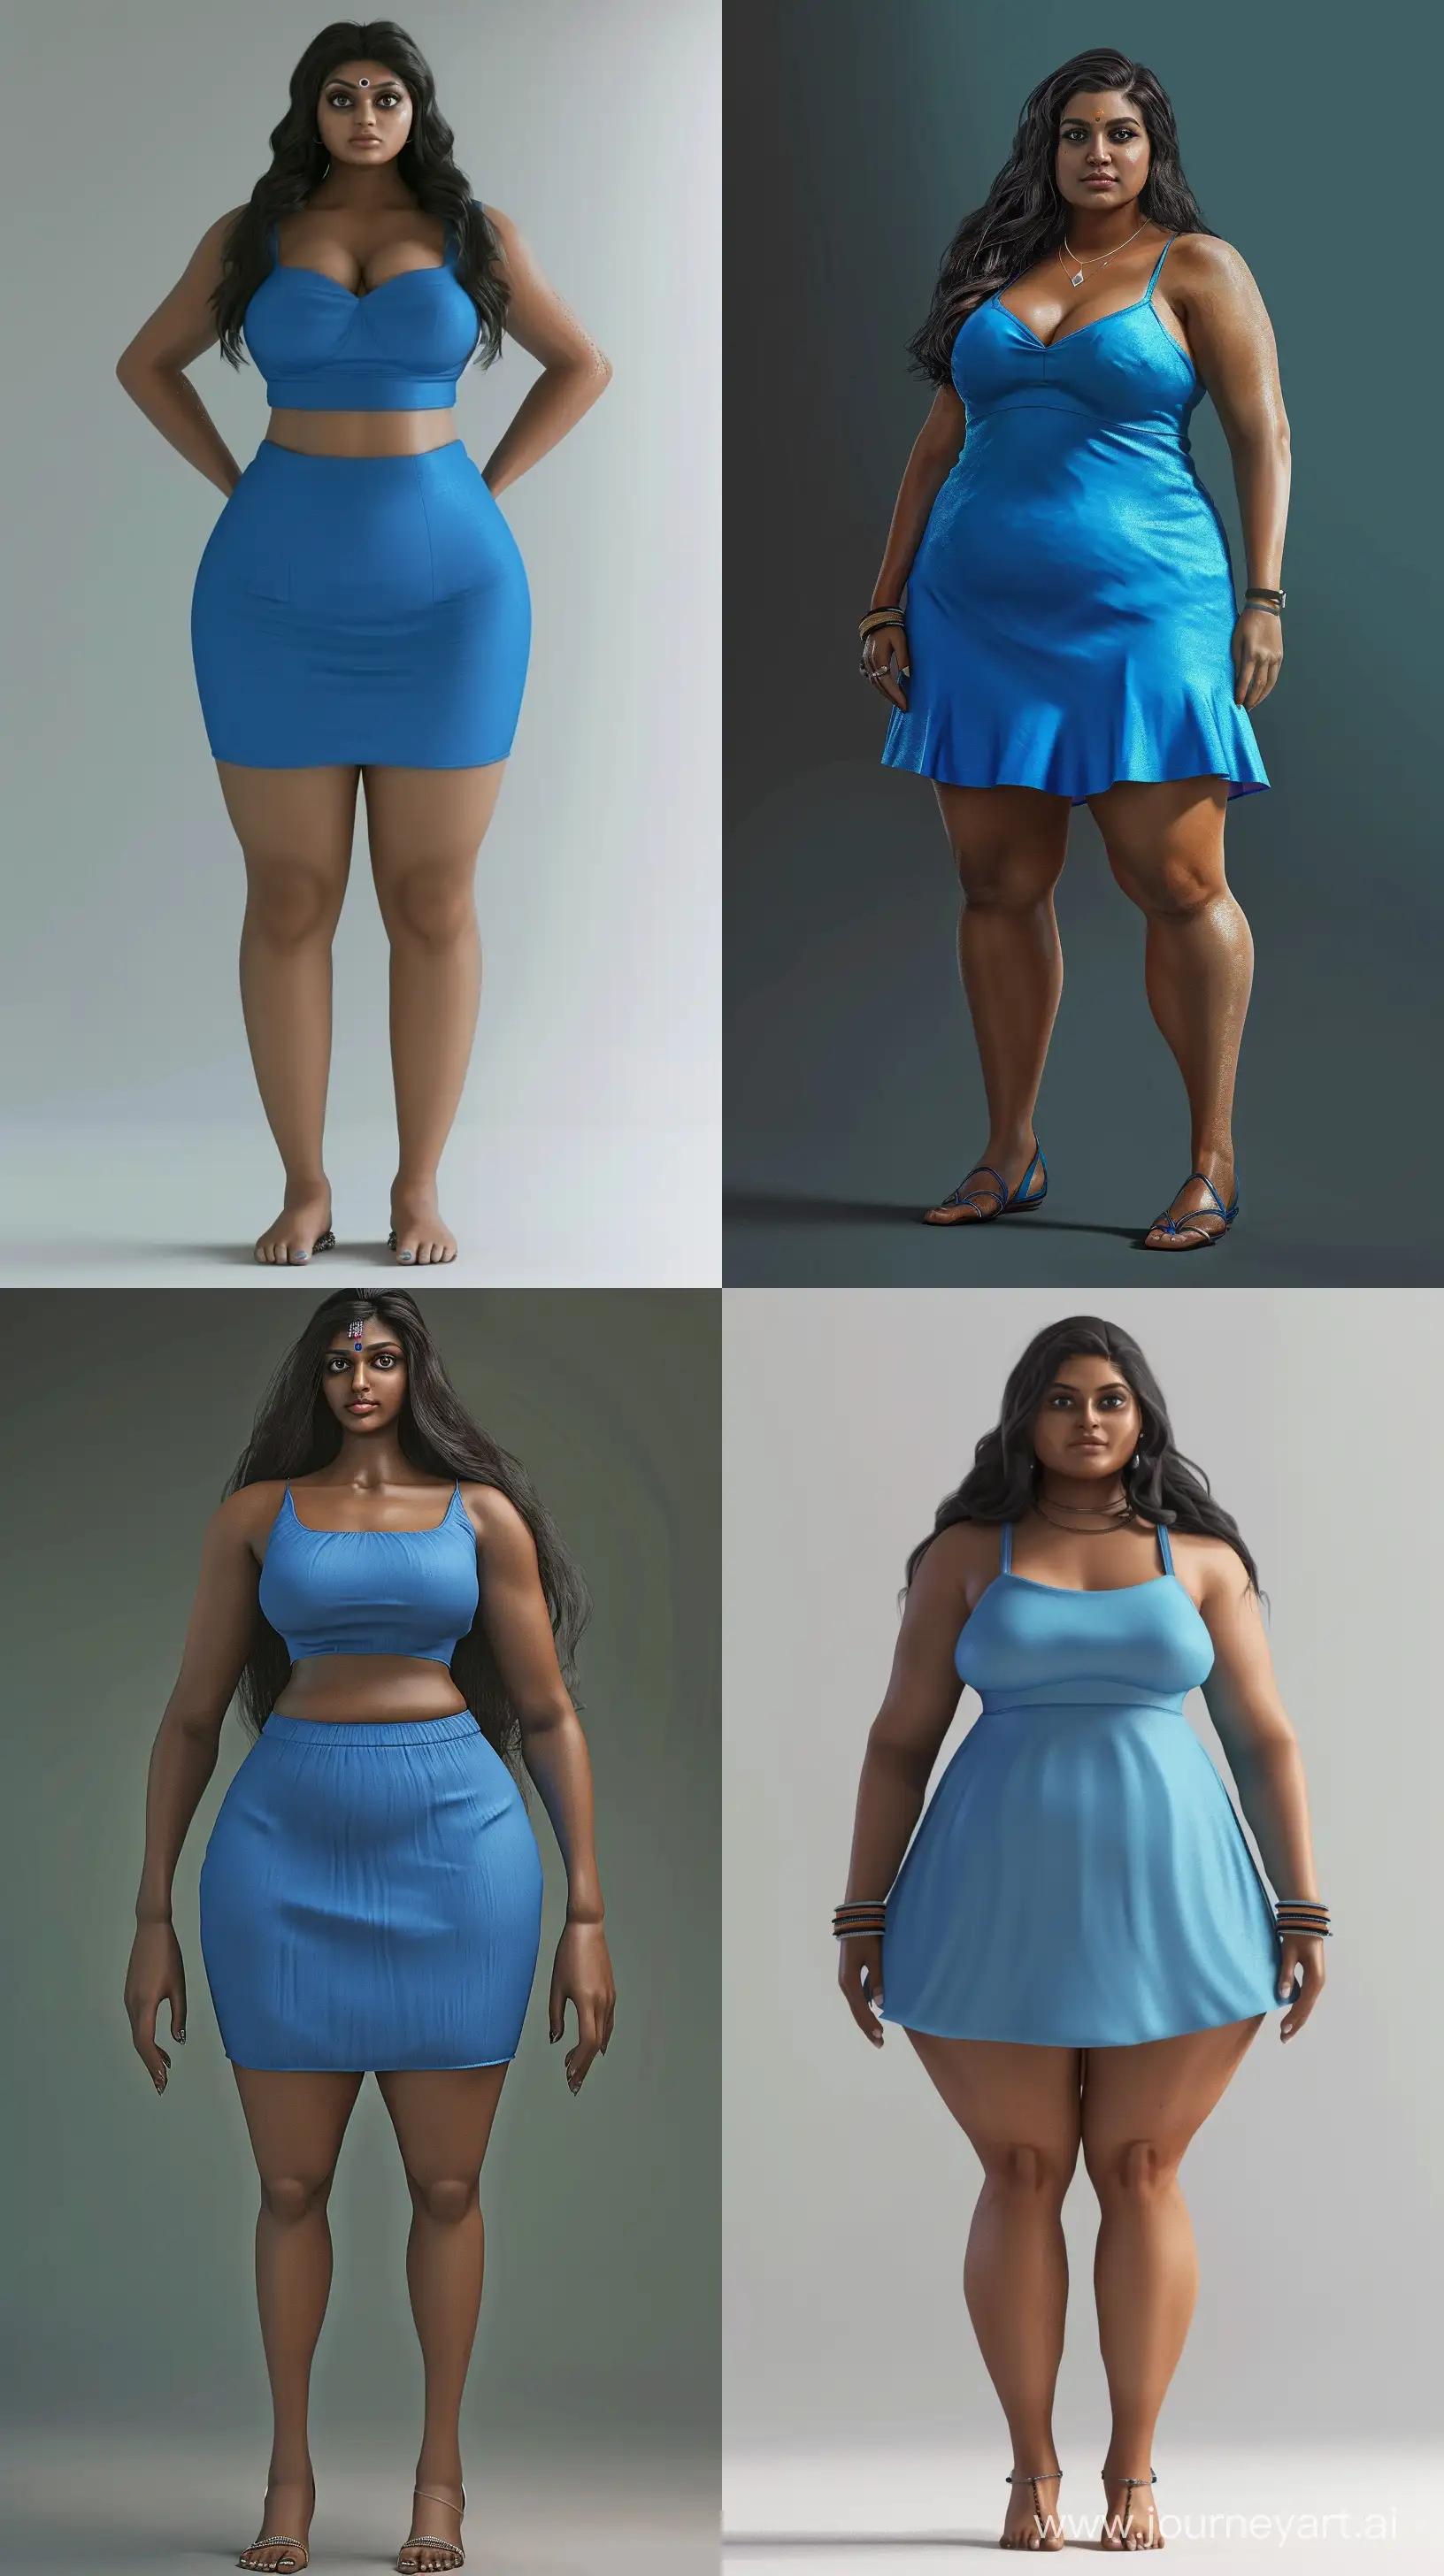 Tall-Curvy-Tamil-Indian-Woman-in-Elegant-Blue-Dress